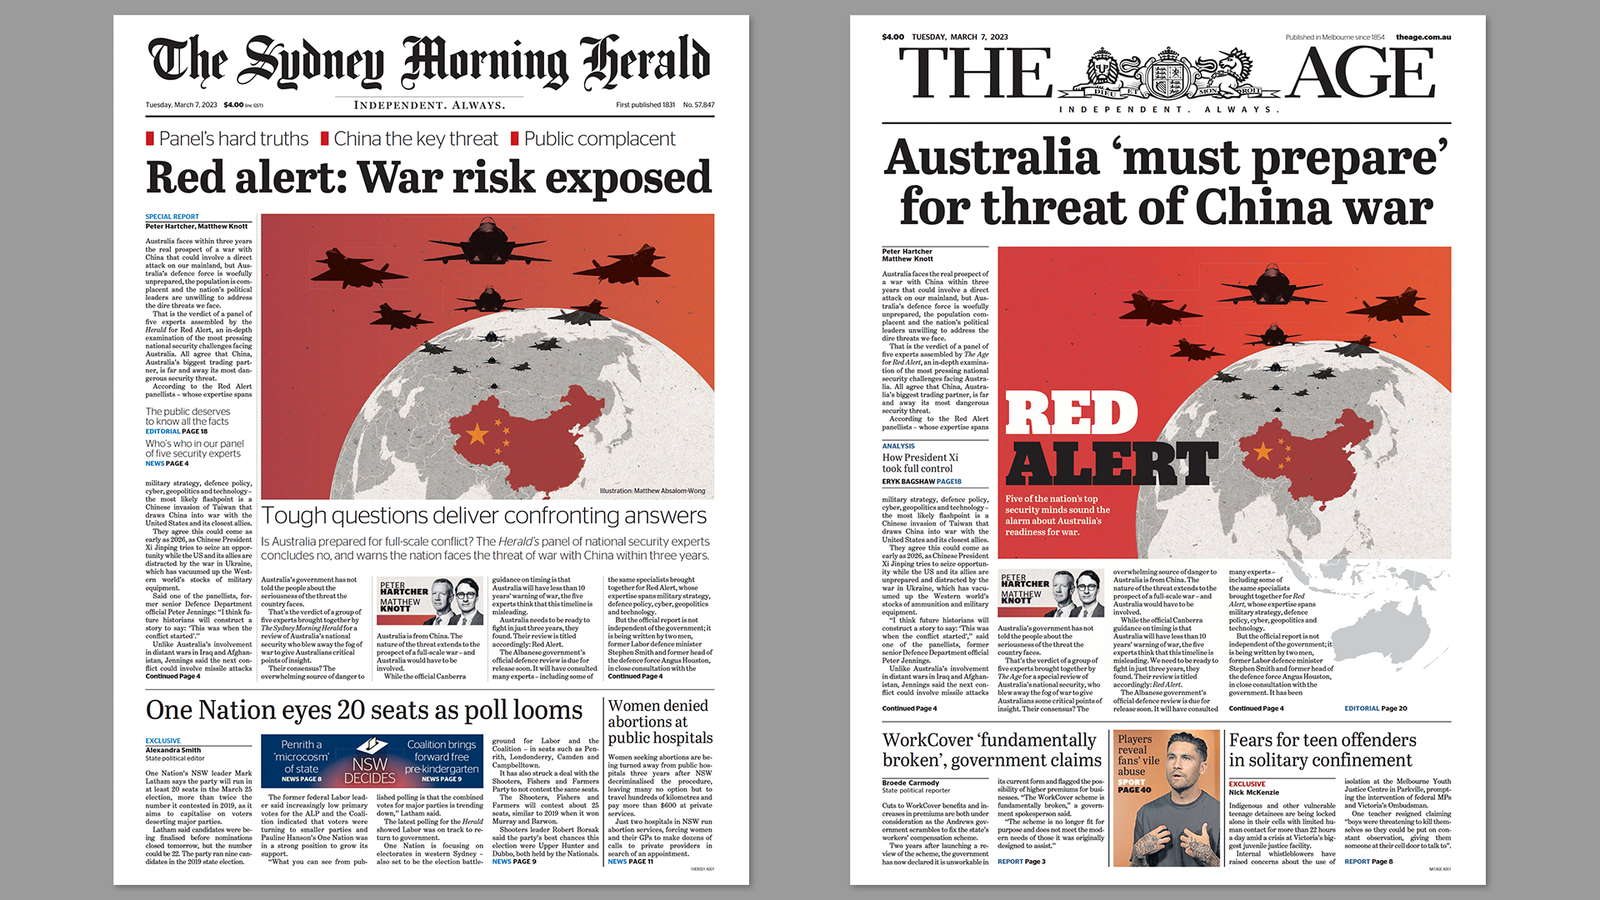 Des journaux australiens appellent à la guerre avec la Chine, aux armes nucléaires et à la conscription massive